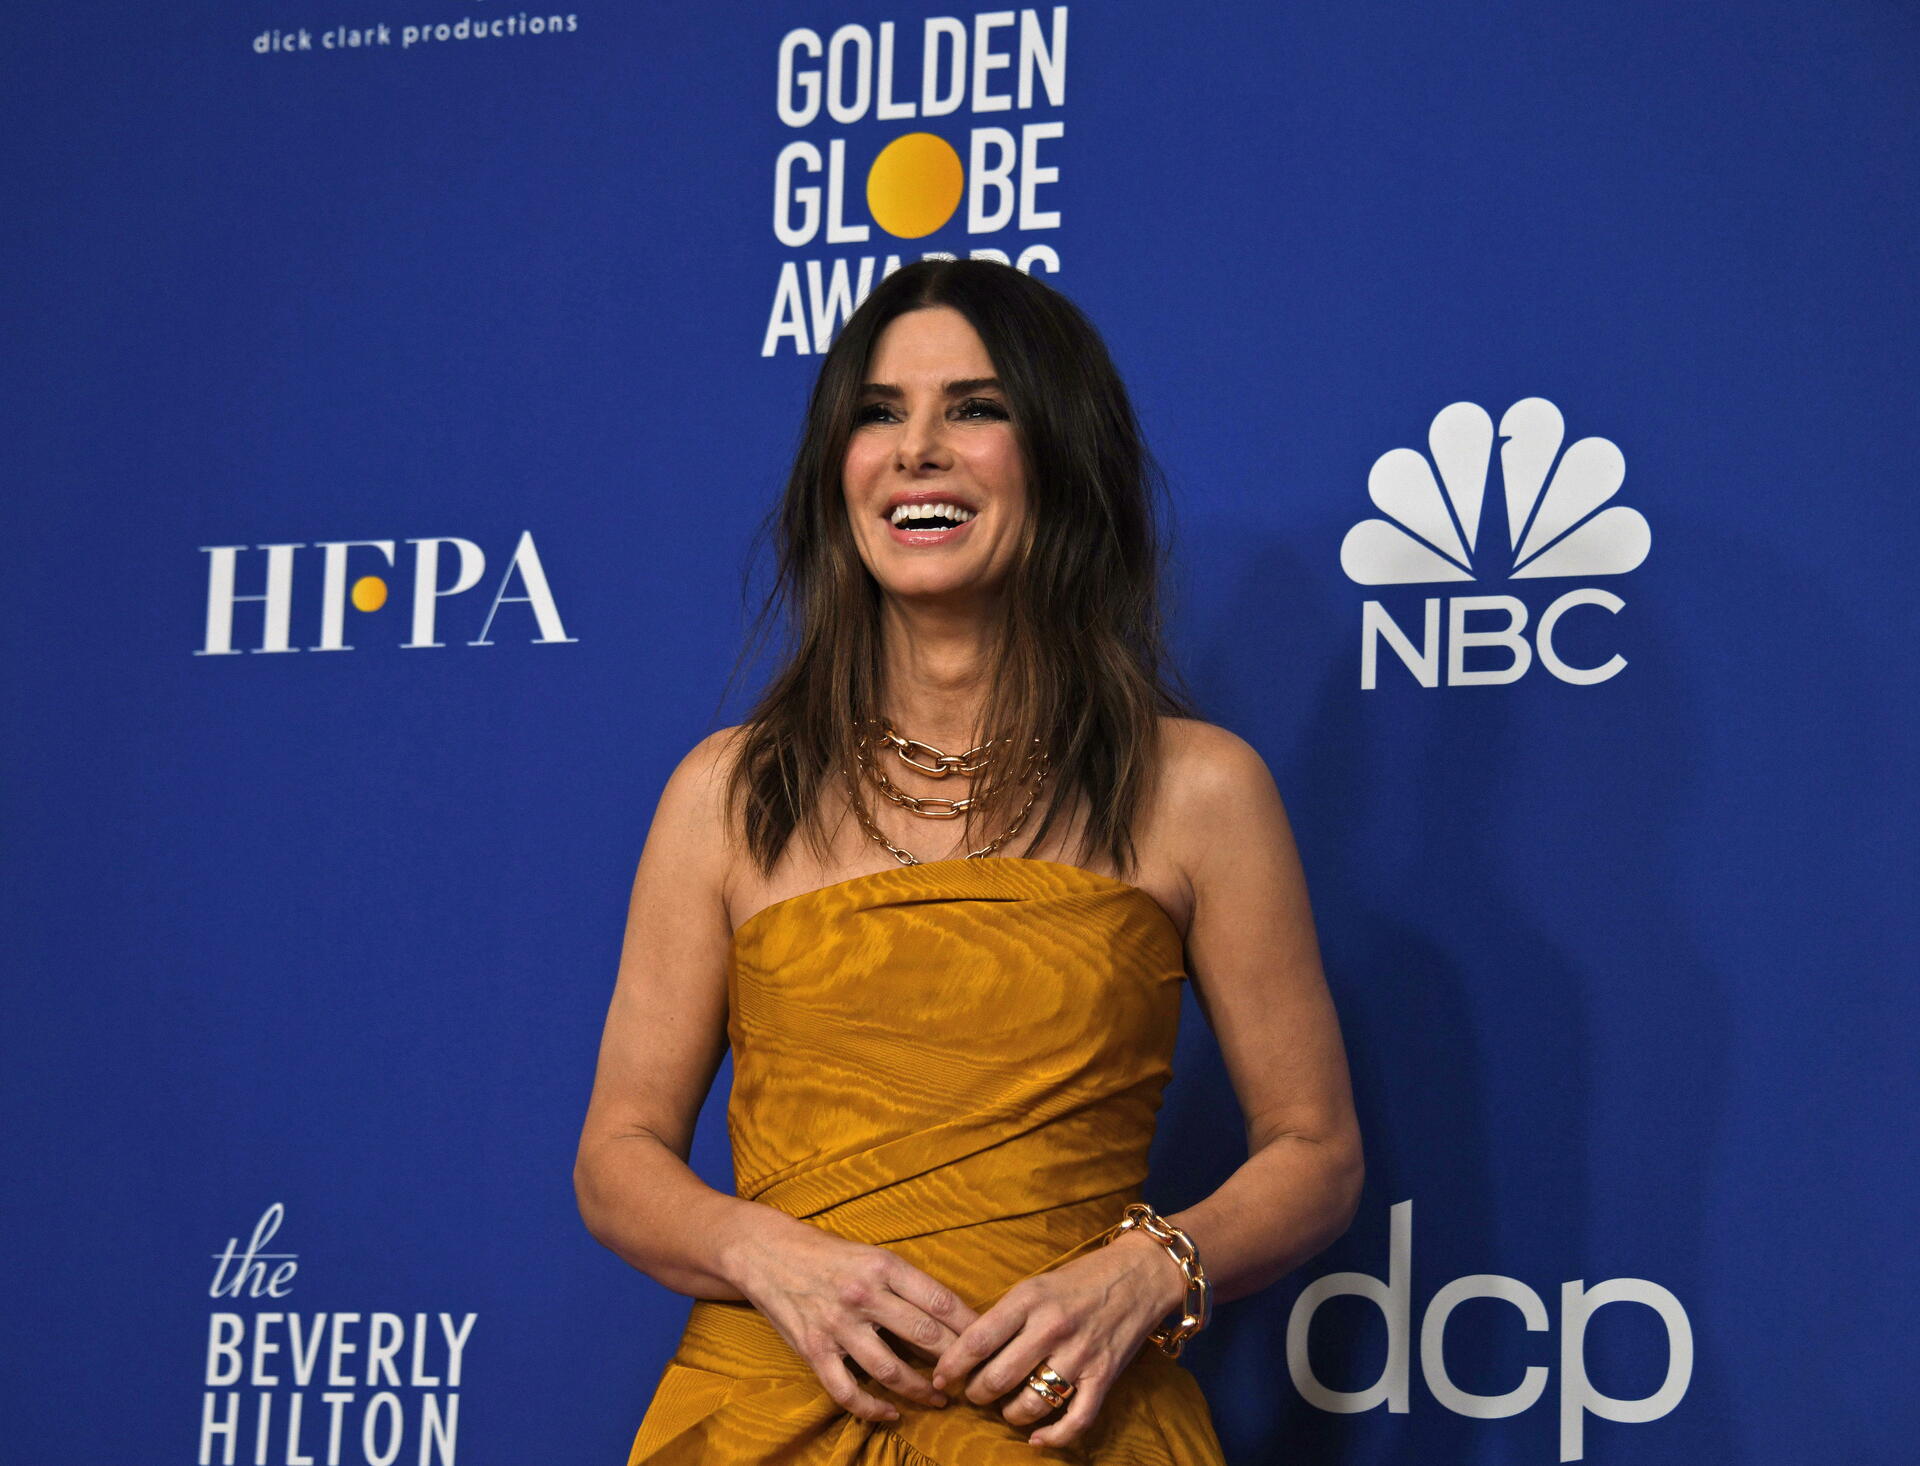 Golden Globes regresan a la televisión en 2023, aseguran en Hollywood